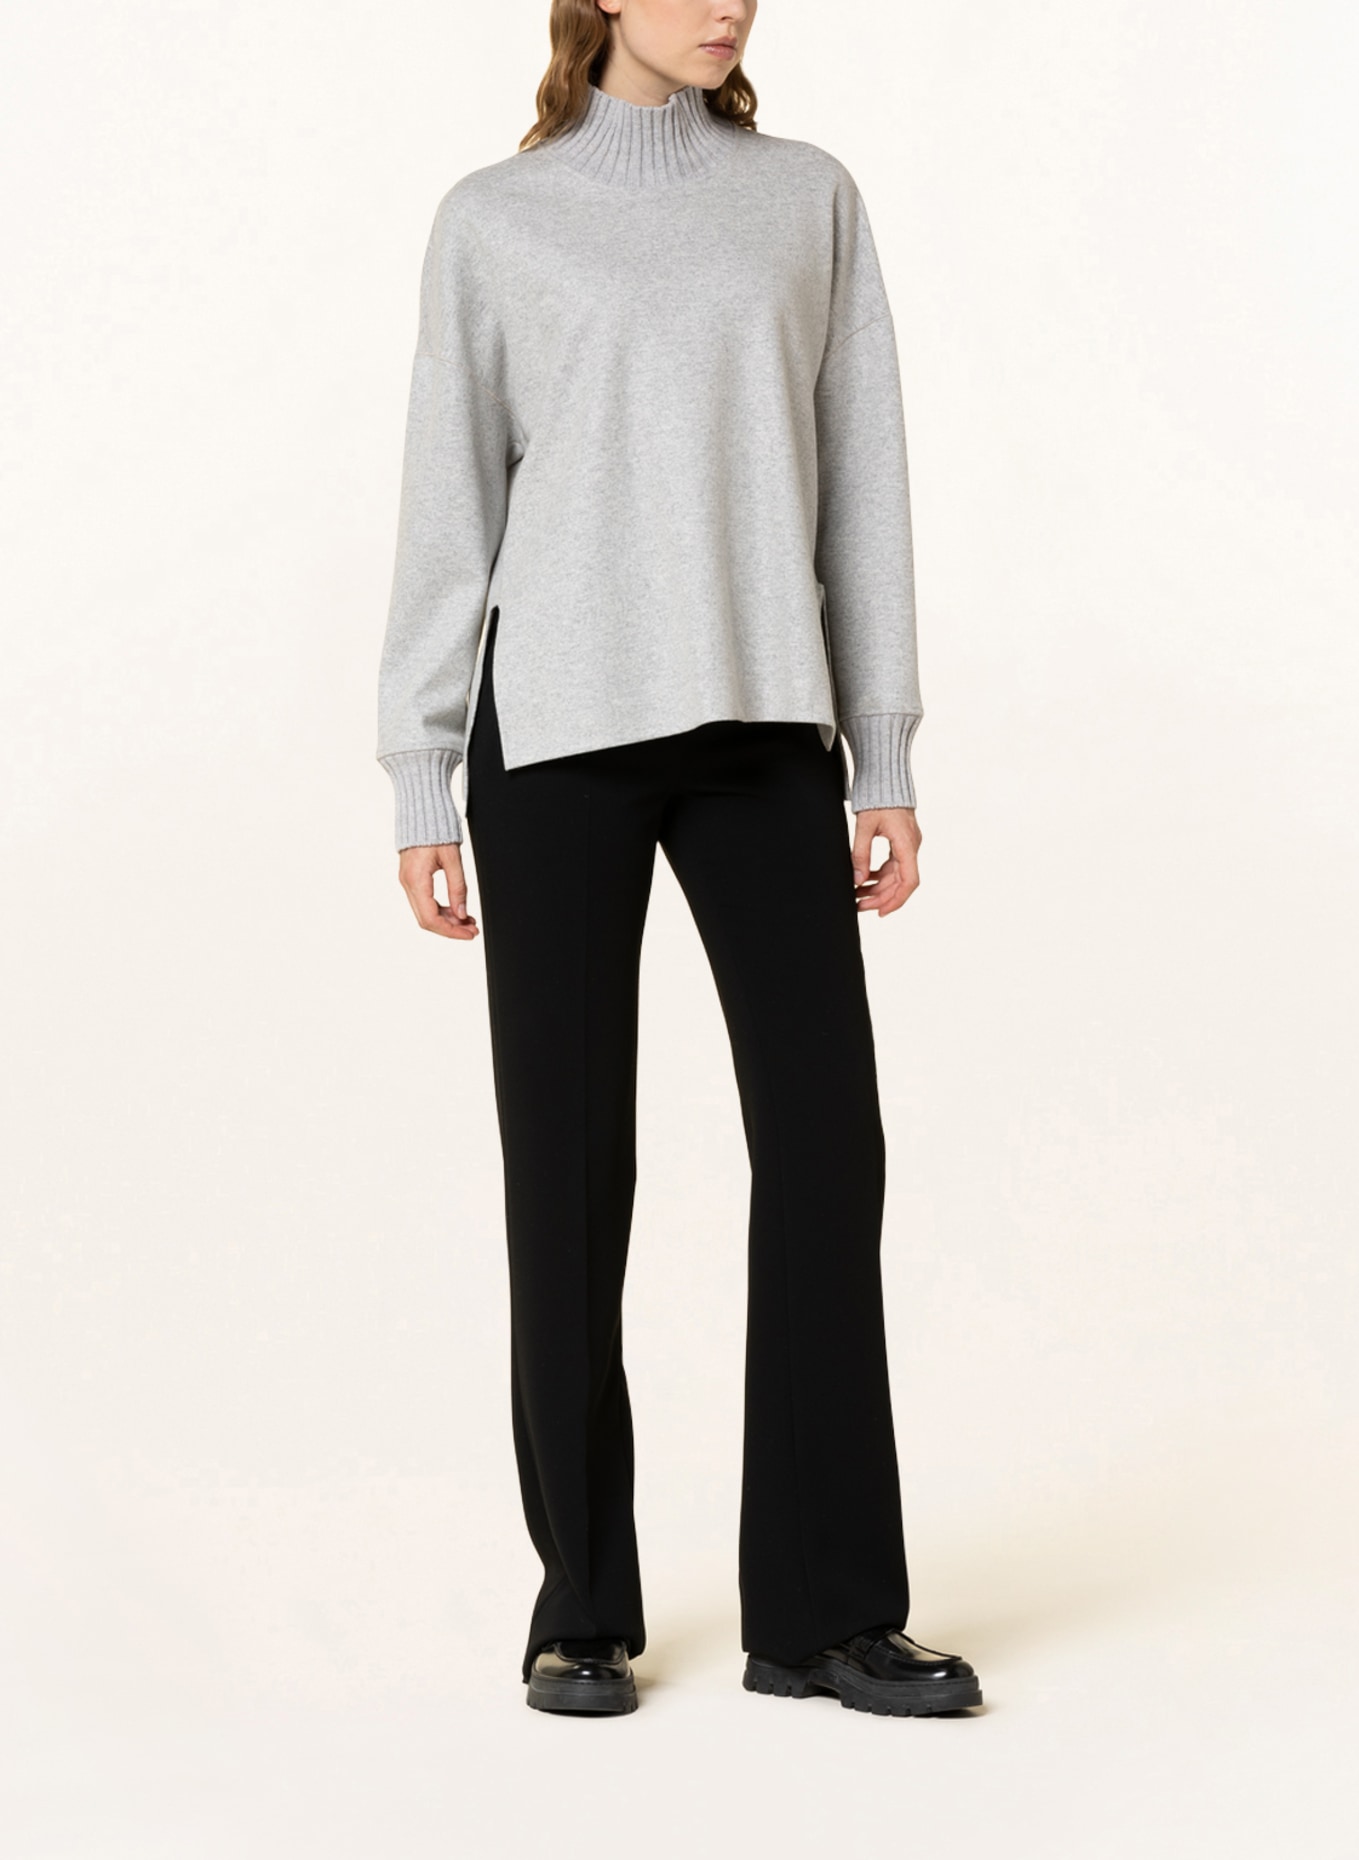 ANTONELLI firenze Sweater CORTESE, Color: GRAY (Image 2)